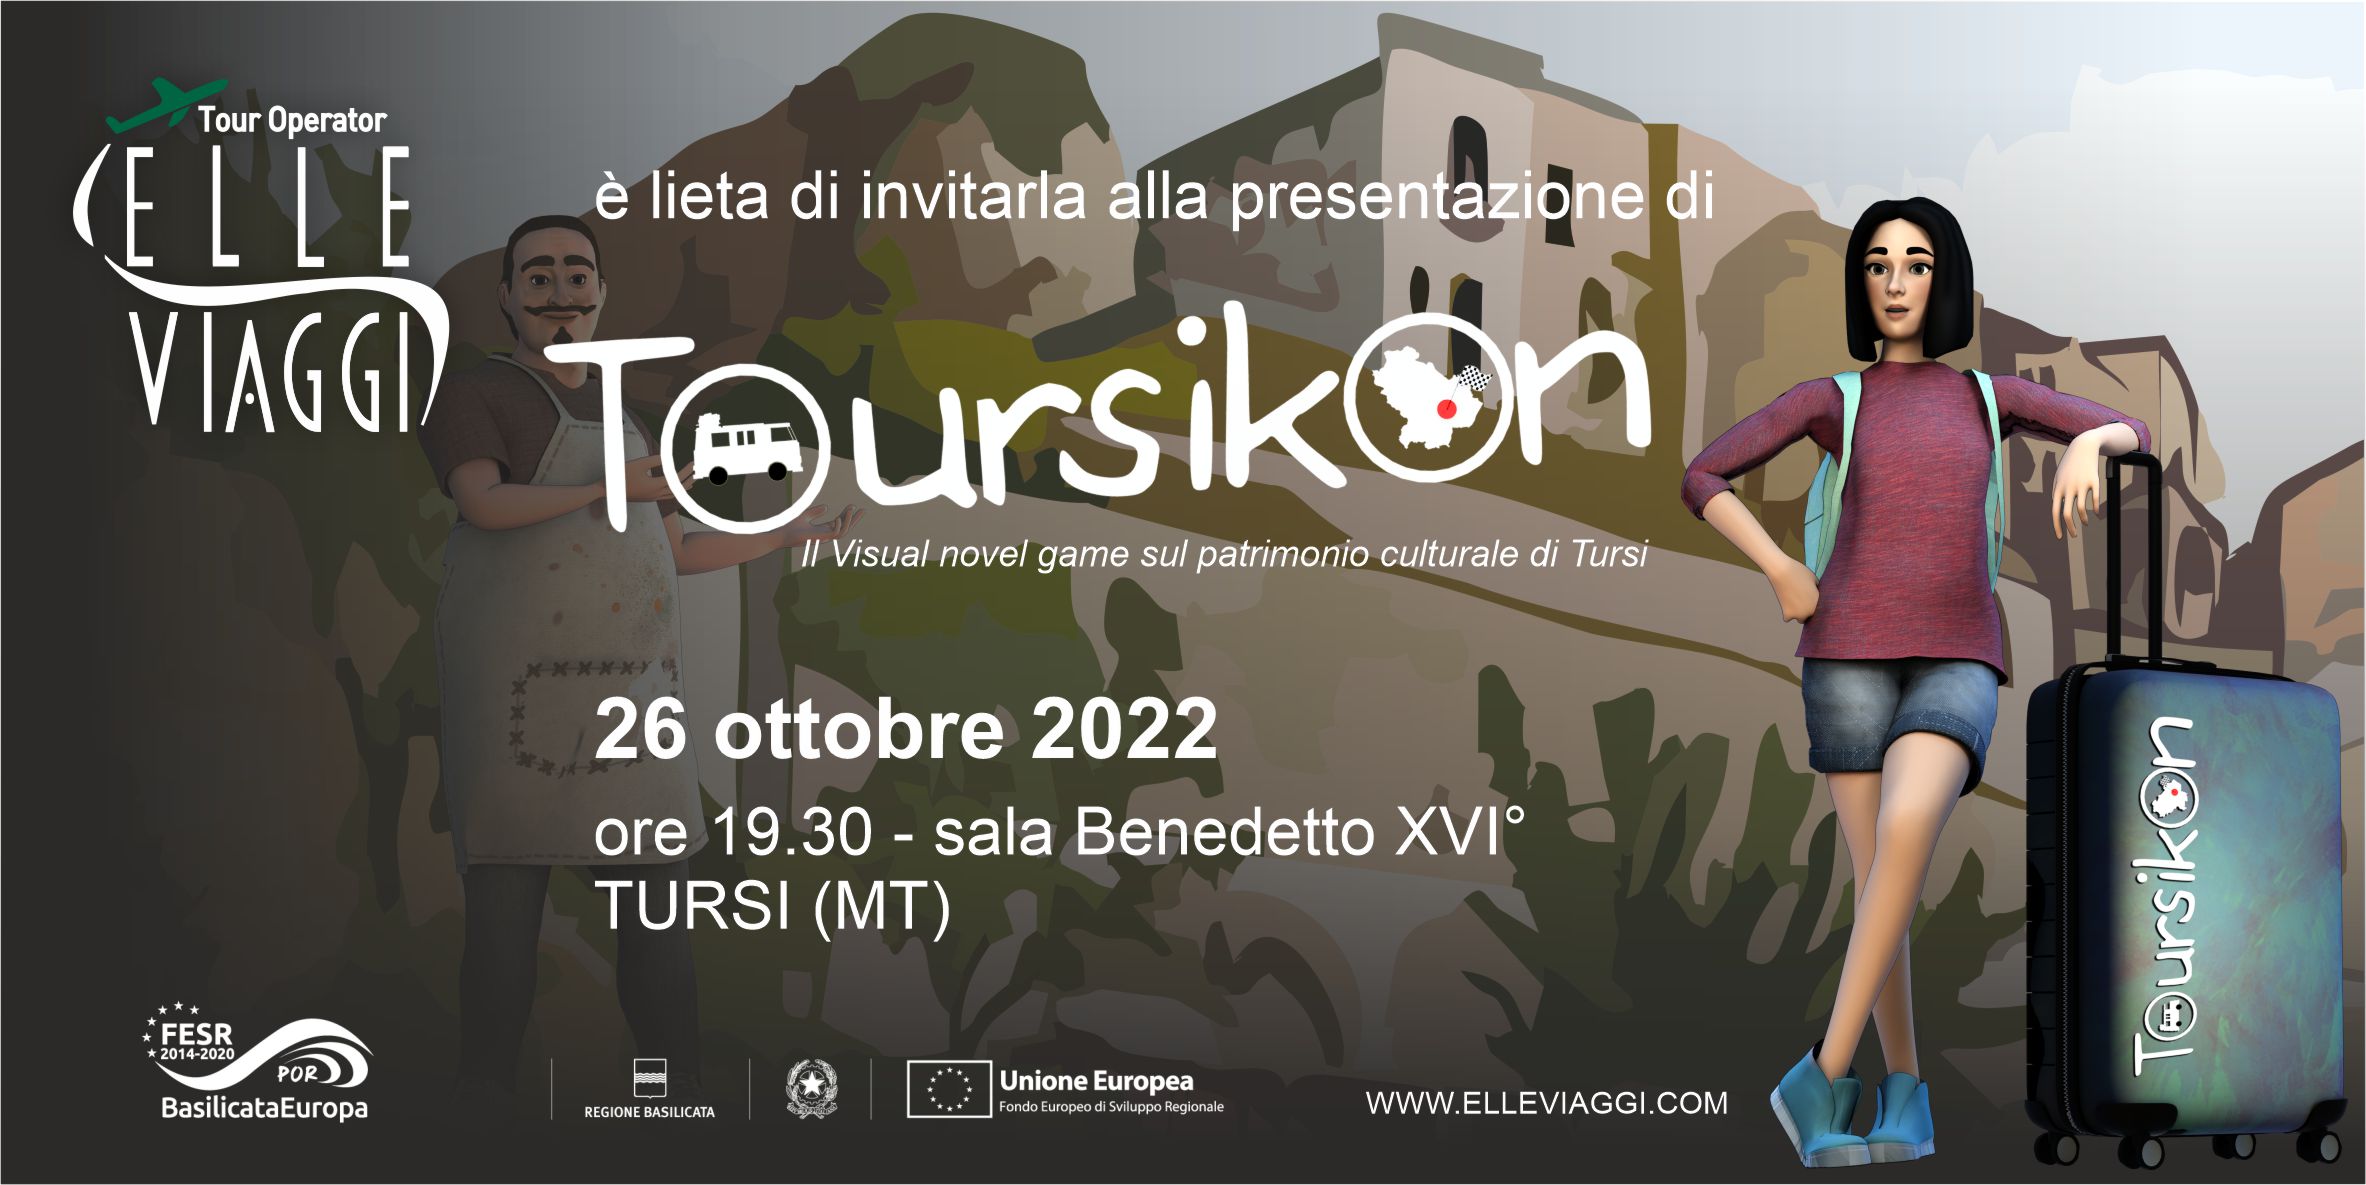 Toursikon, la presentazione in Basilicata: il 26 ElleViaggi presenta il visual novel game a Tursi